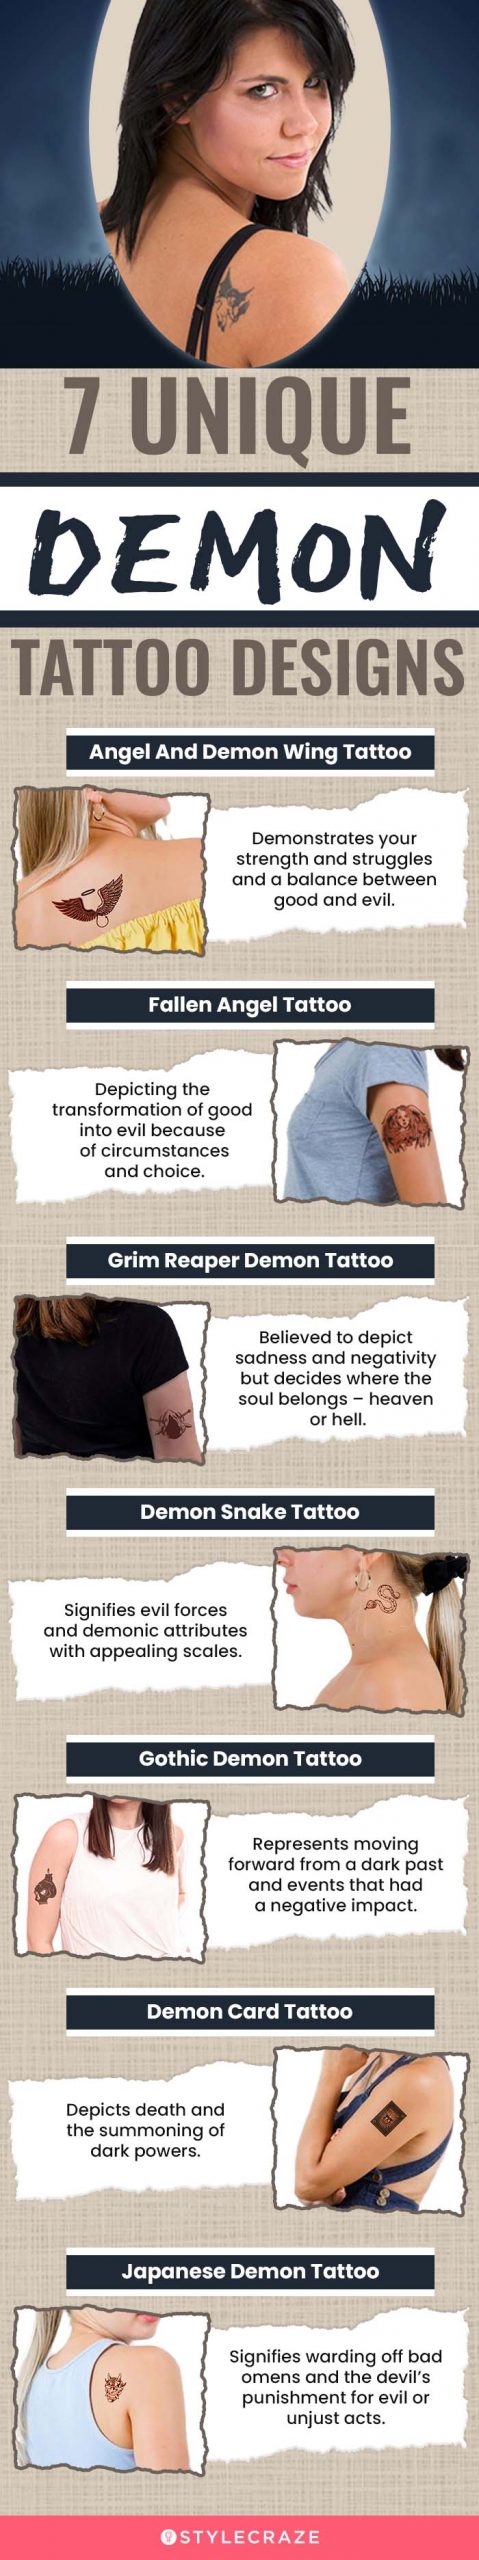 7 unique demon tattoo designs (infographic)